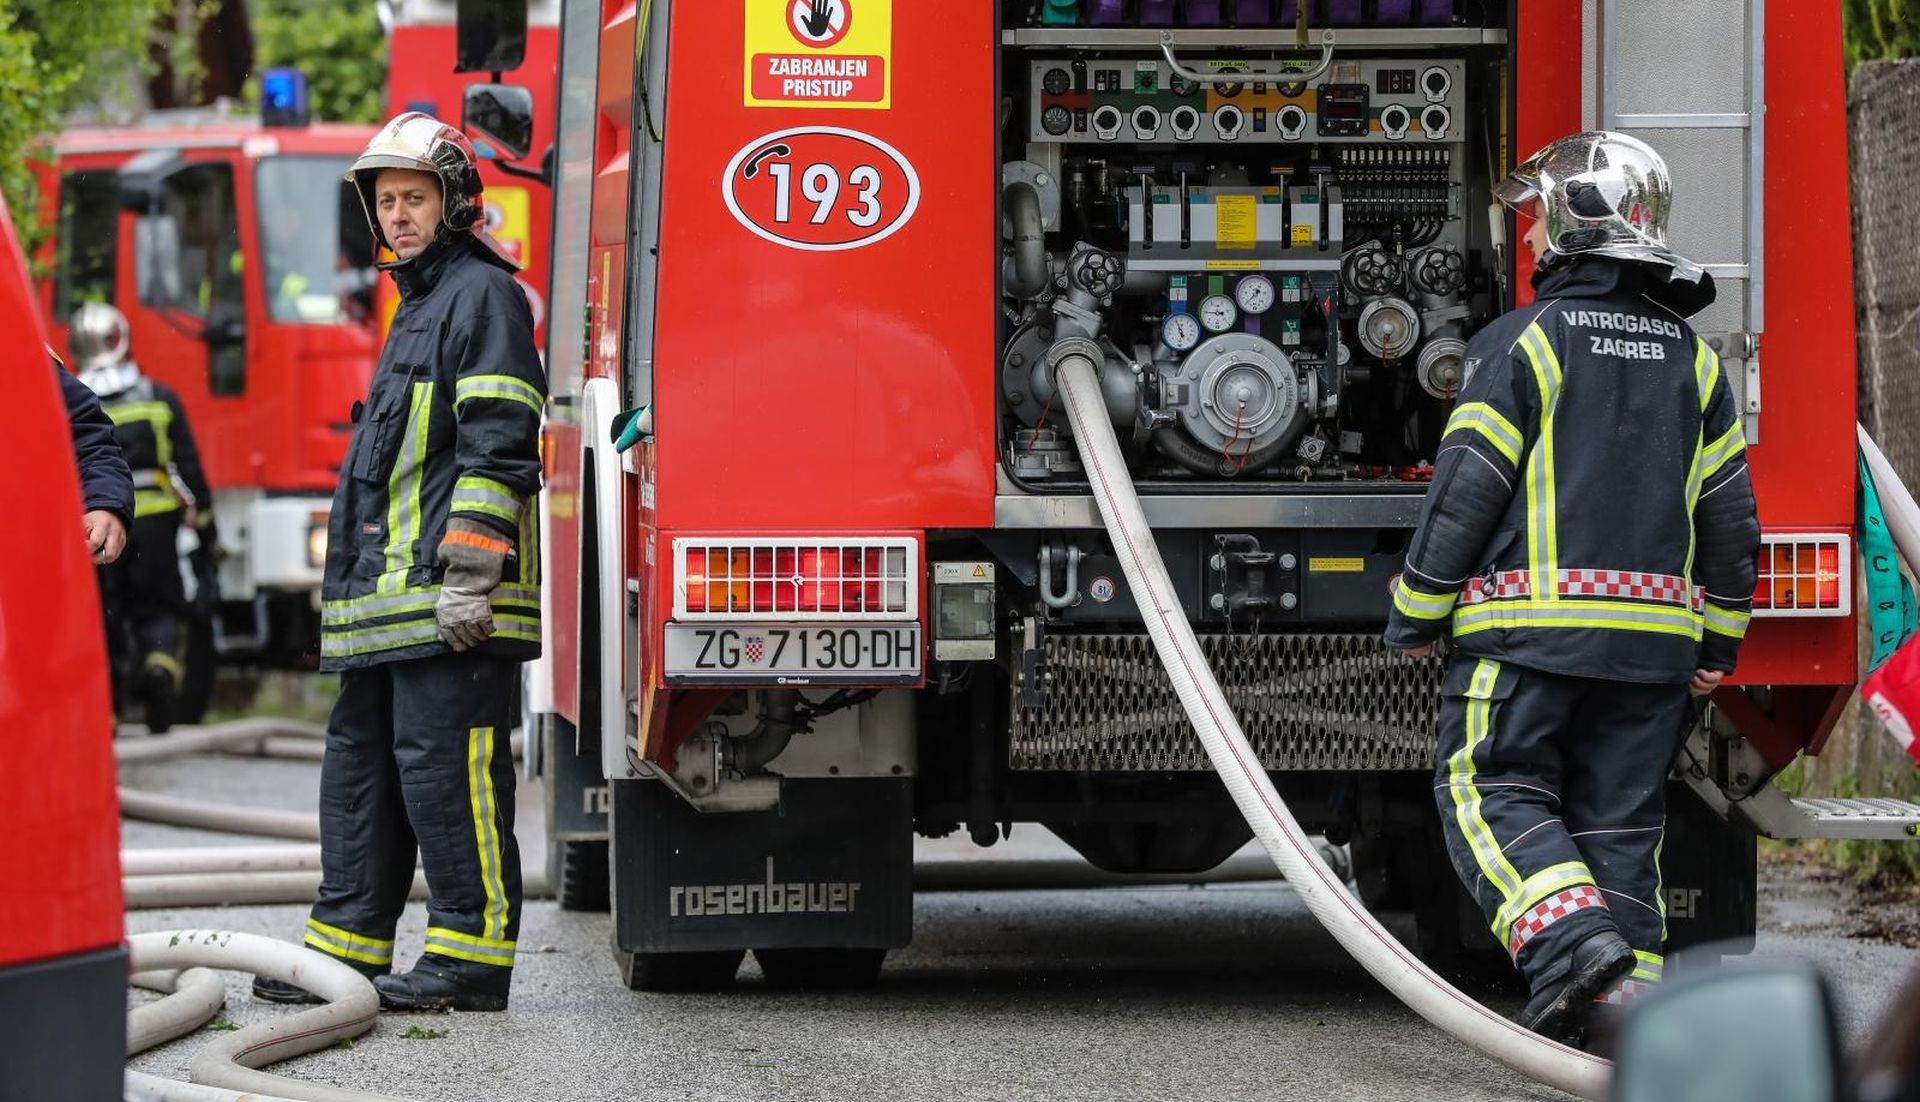 13.05.2019, Zagreb - Vatrogasci gase kroviste kuce u ulici Kancelak.
Photo: Jurica Galoic/PIXSELL